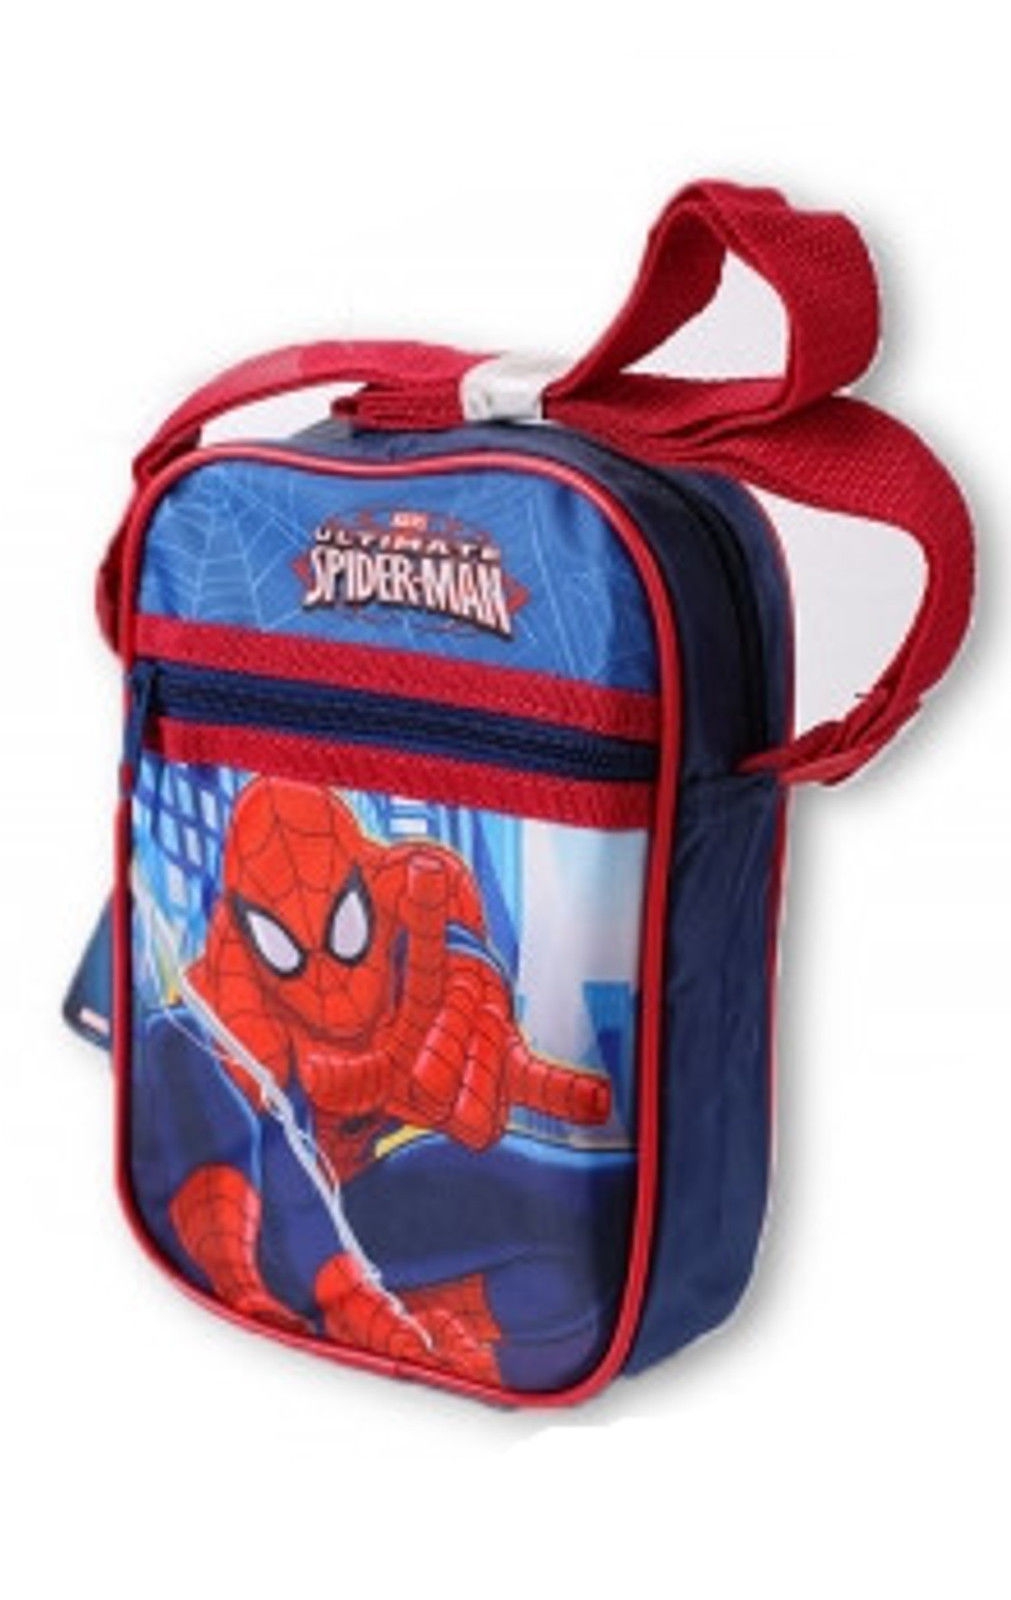 Spiderman 'Red' School Shoulder Bag